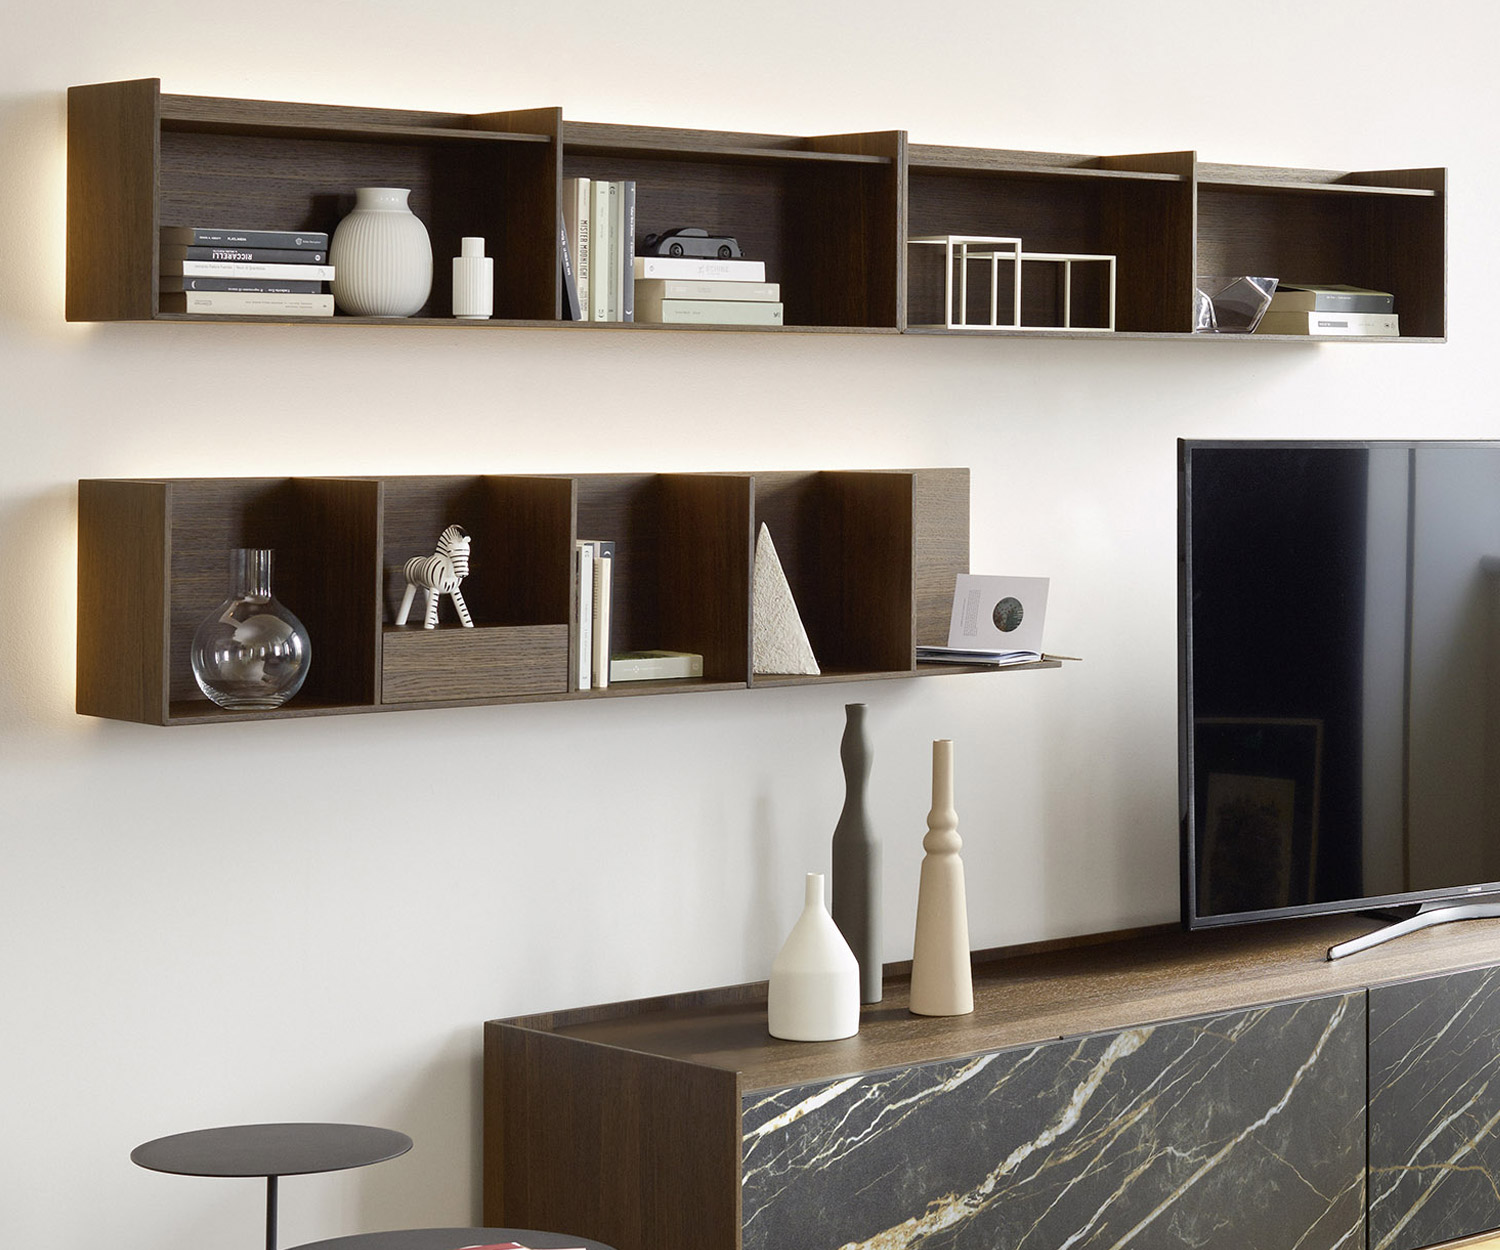 Exklusives Livitalia Design Holz Wandregal über bodenstehendem Design Lowboard im Wohnzimmer